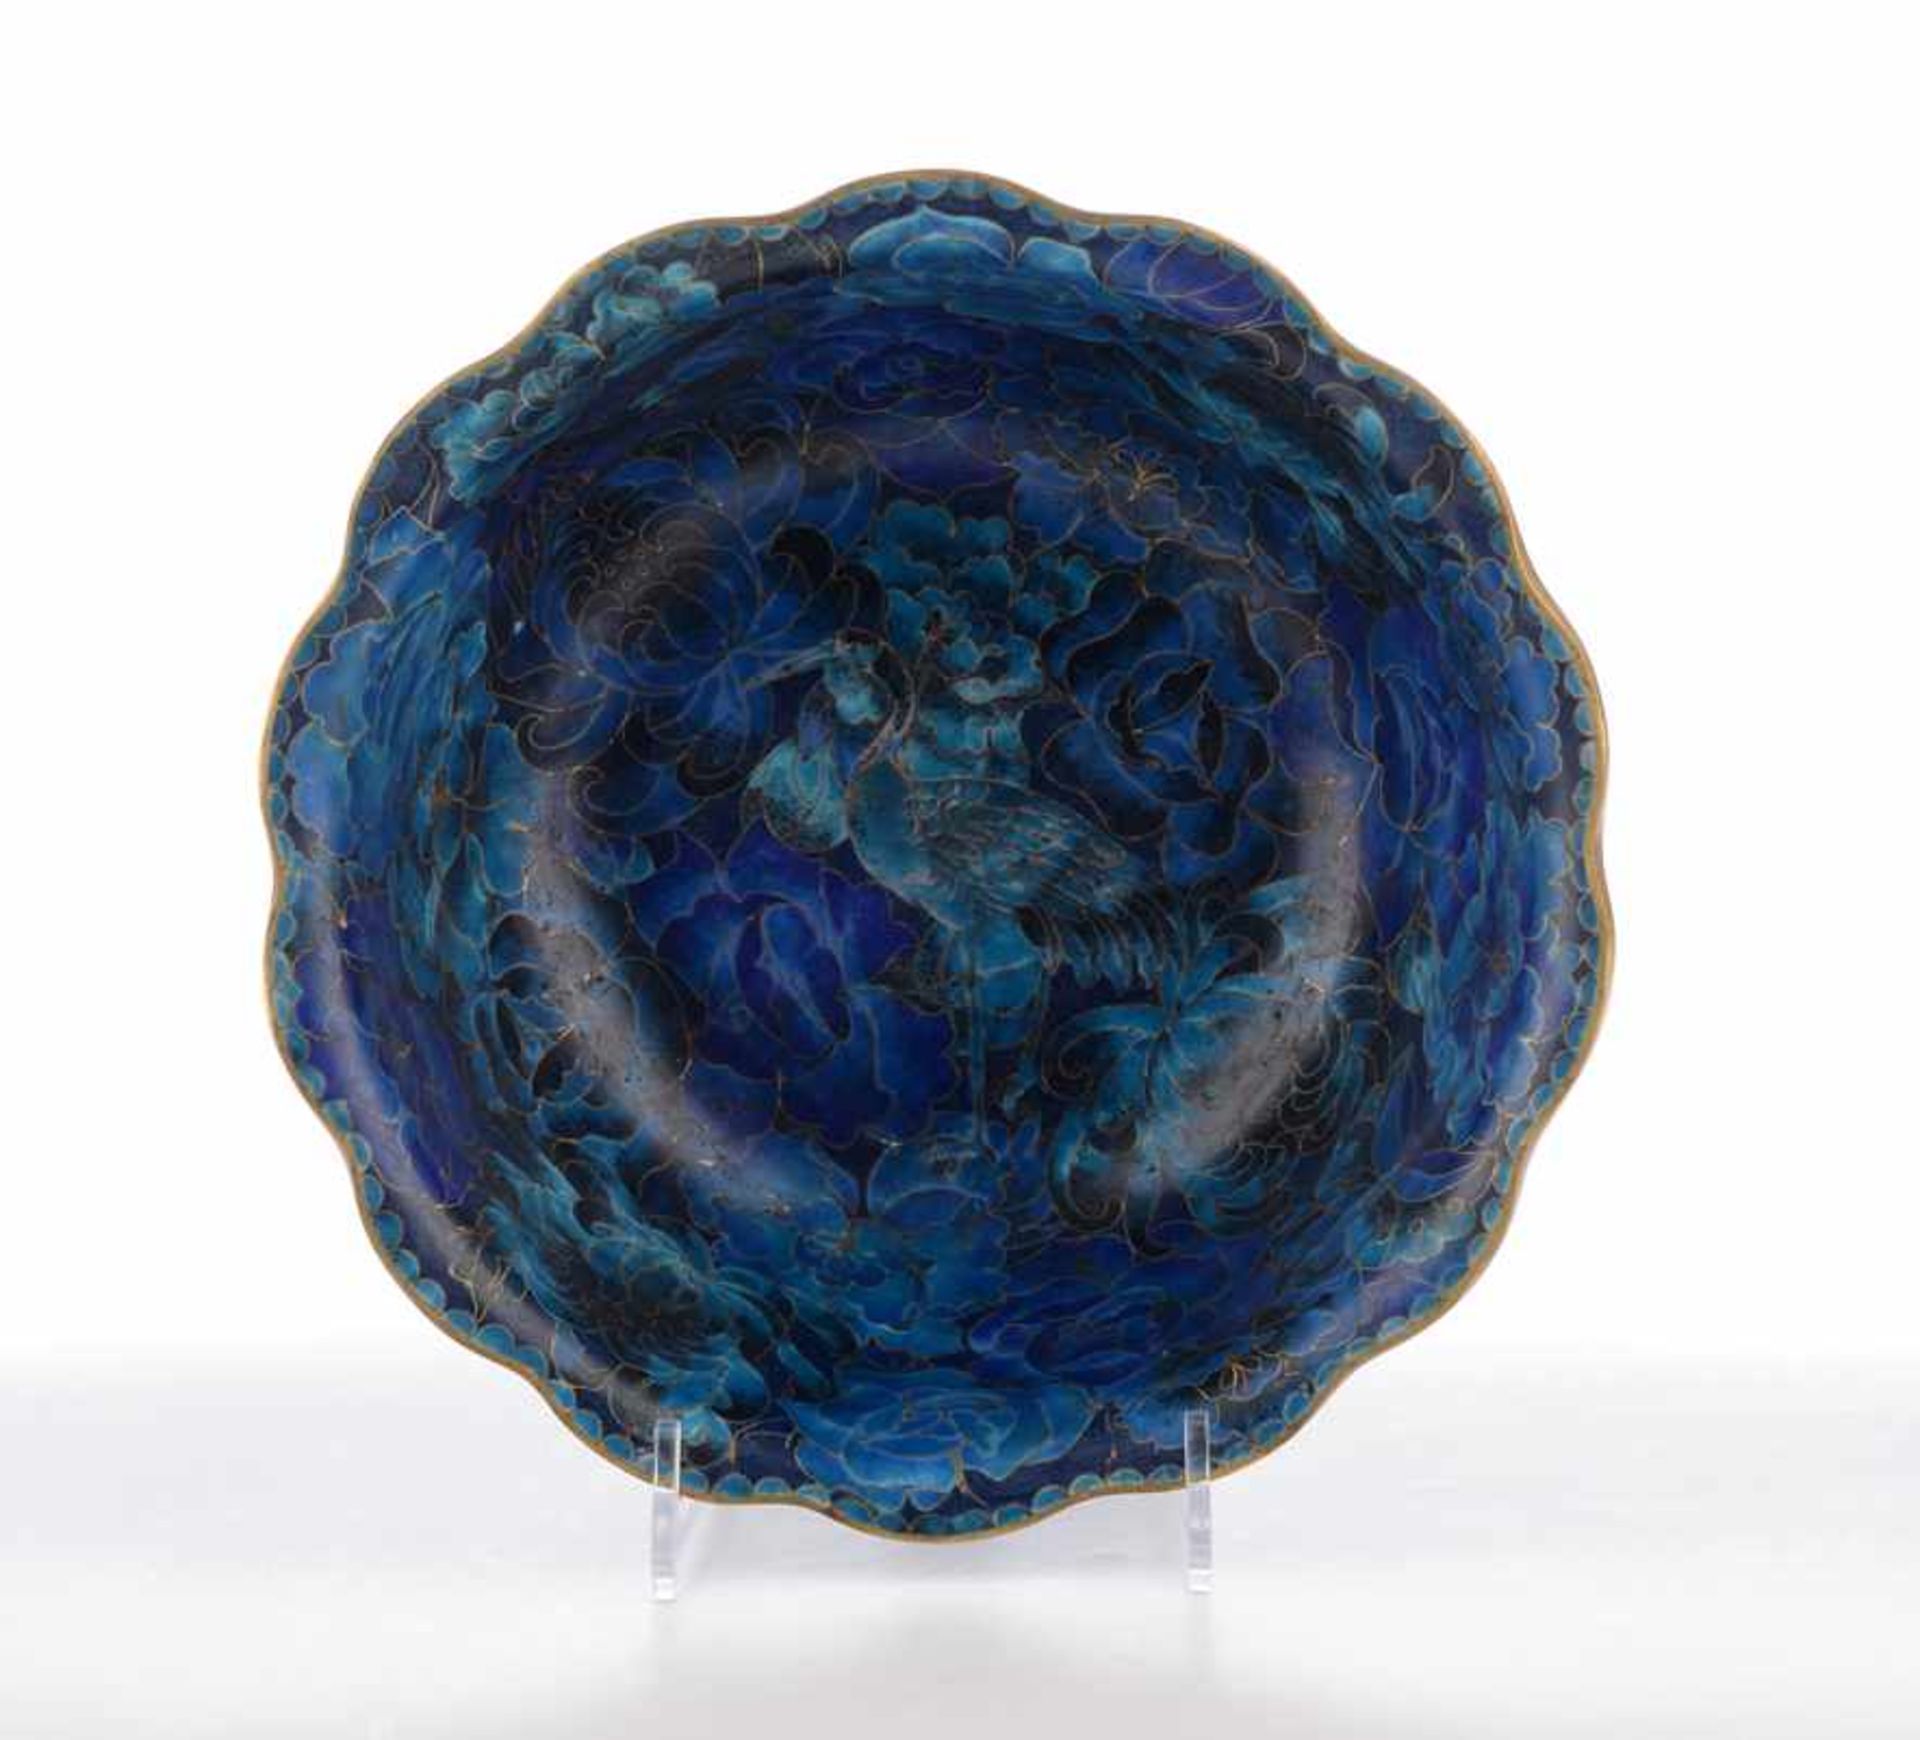 Steilwandige Cloisonne-Schale. Cloisonne auf Bronze, Wandung und Spiegel in verschiedenen Blautönen, - Bild 3 aus 3